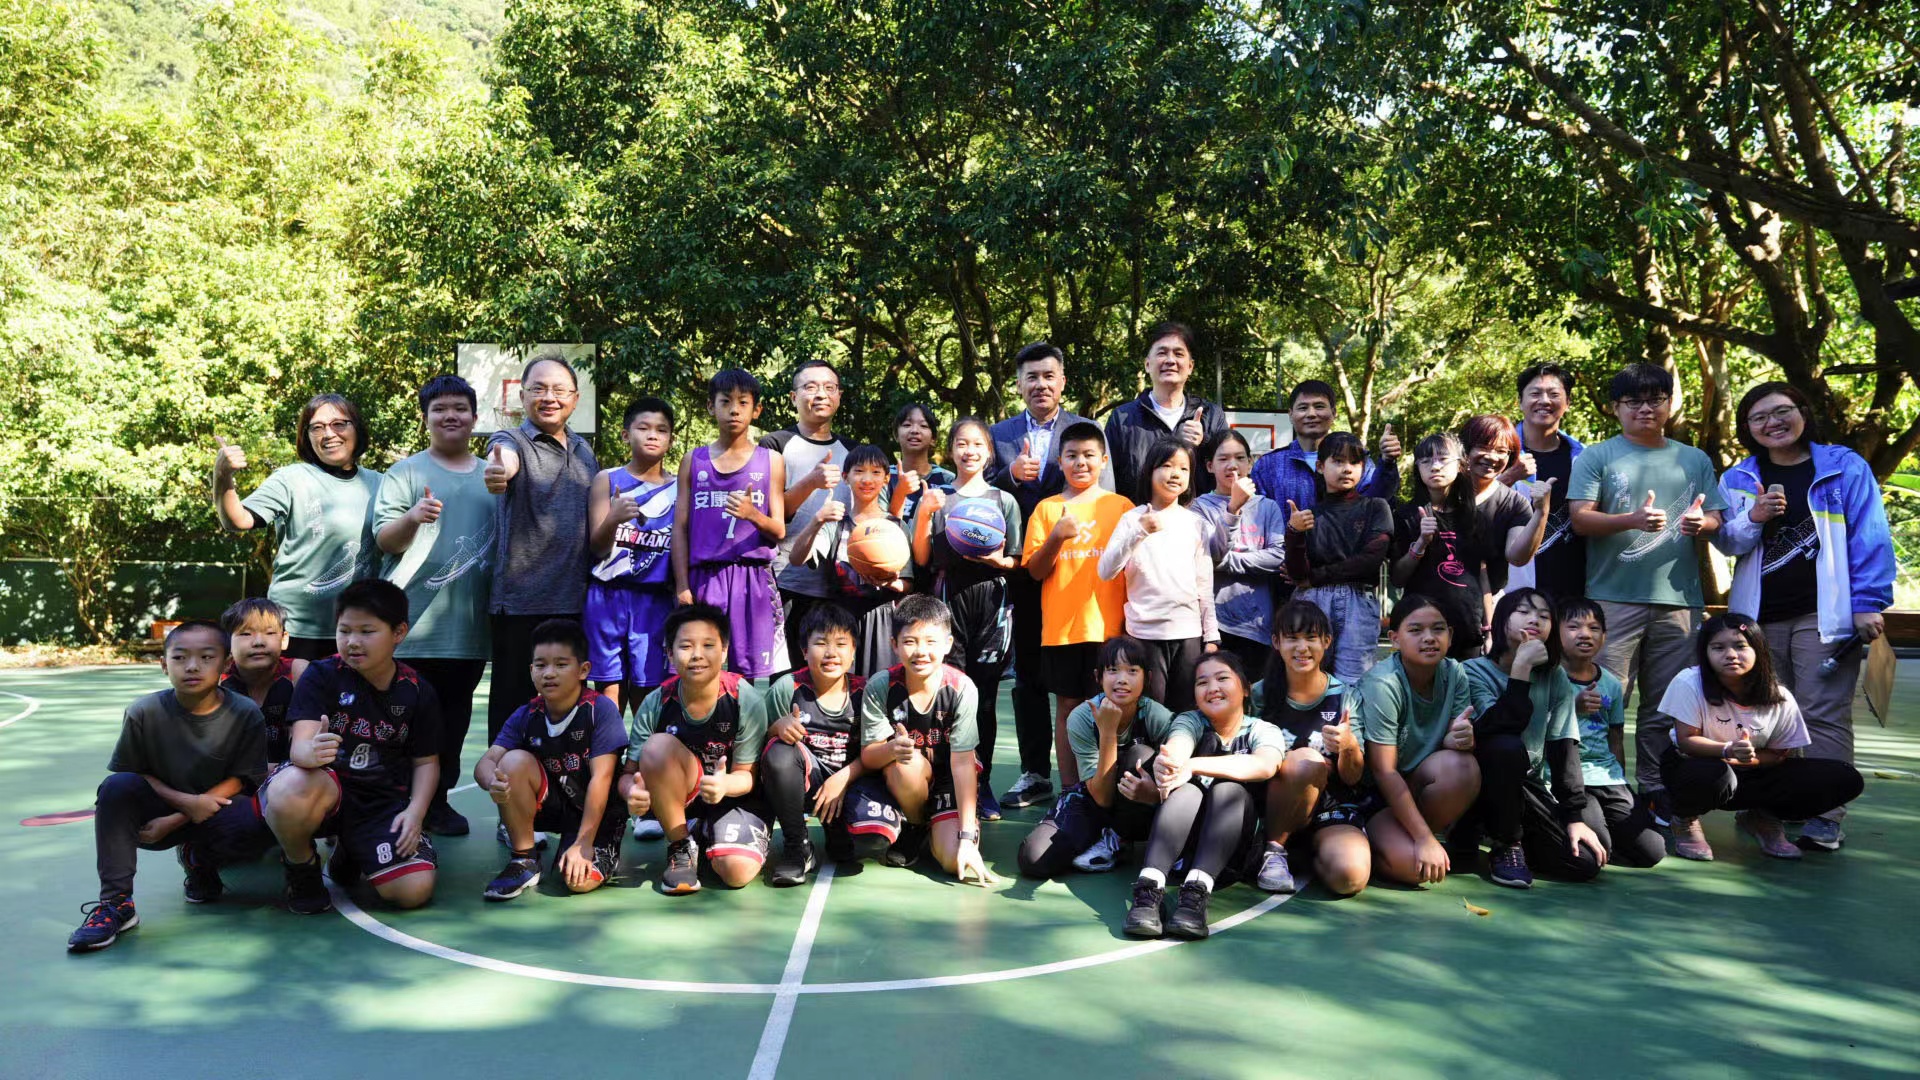 【用愛心成就偏鄉籃球夢】亞拉企業股份有限公司捐贈籃球設施 為偏鄉國小學童帶來運動新體驗